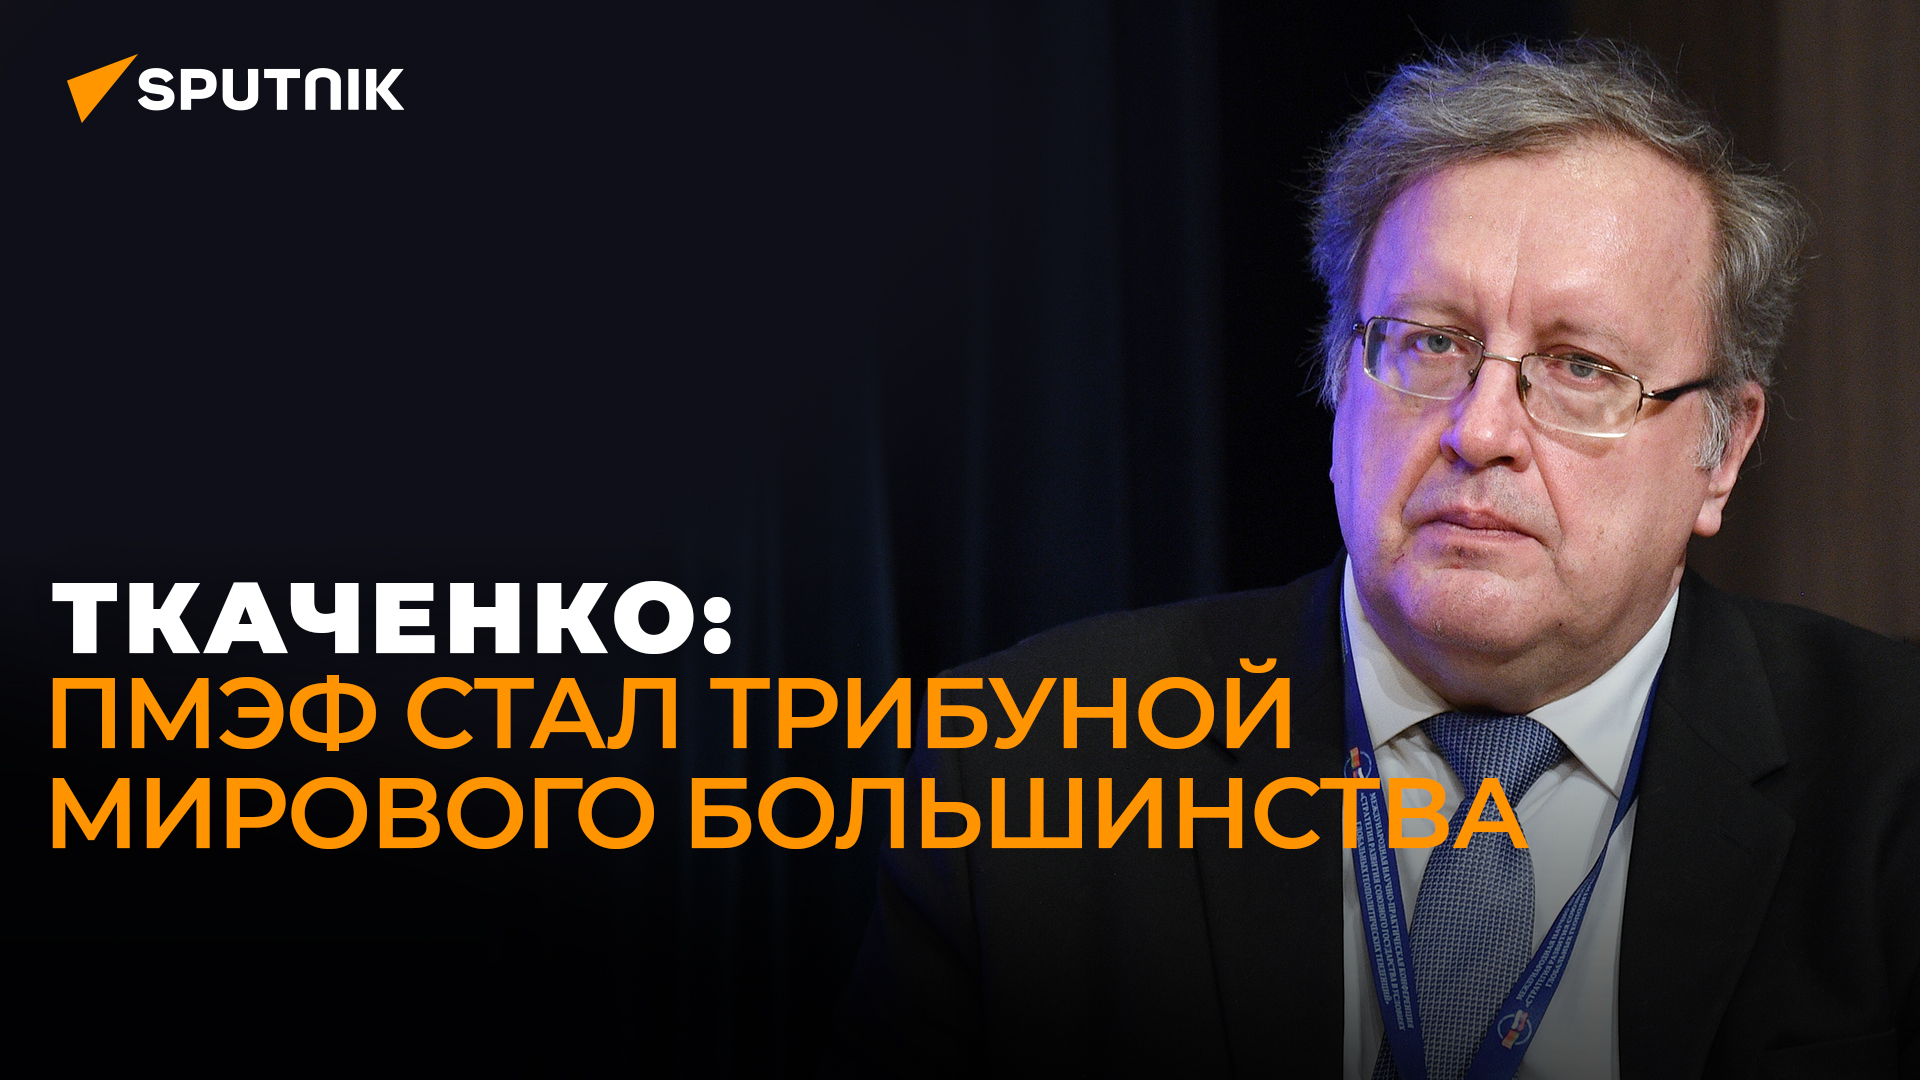 Экономист Ткаченко о новой роли ПМЭФ, экономических планах России и предупреждении для Запада